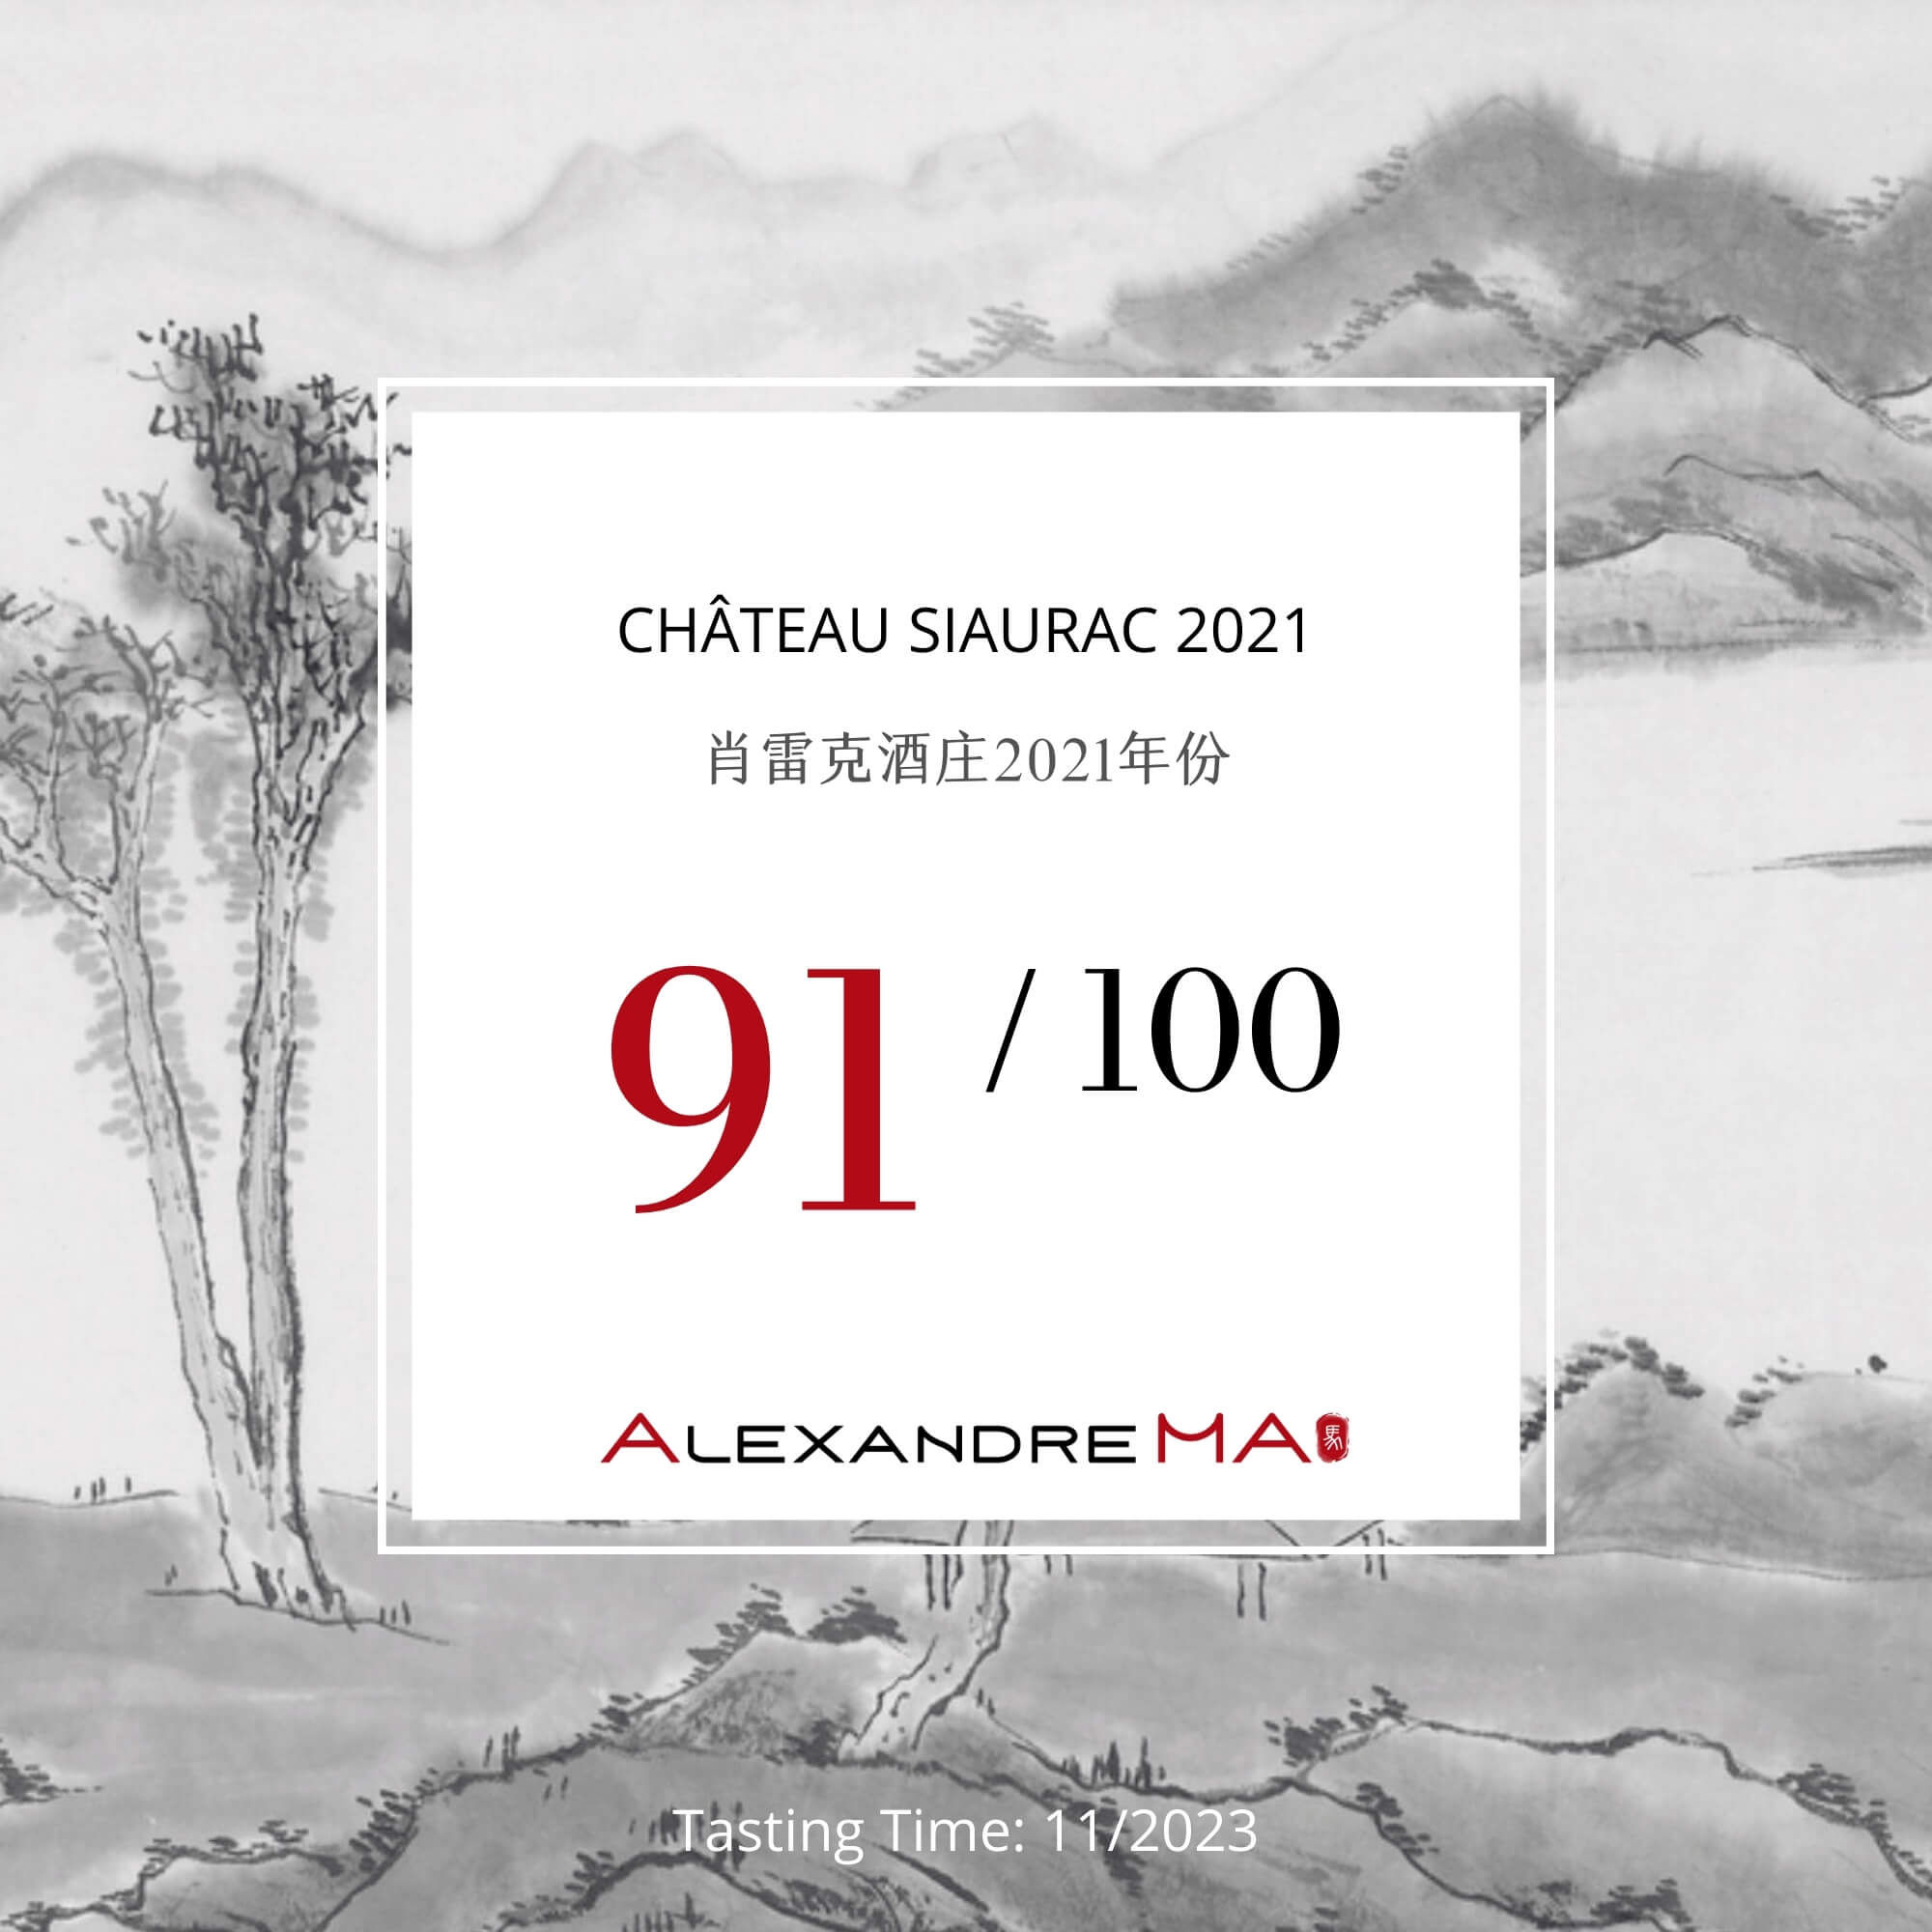 Château Siaurac 2021 - Alexandre MA